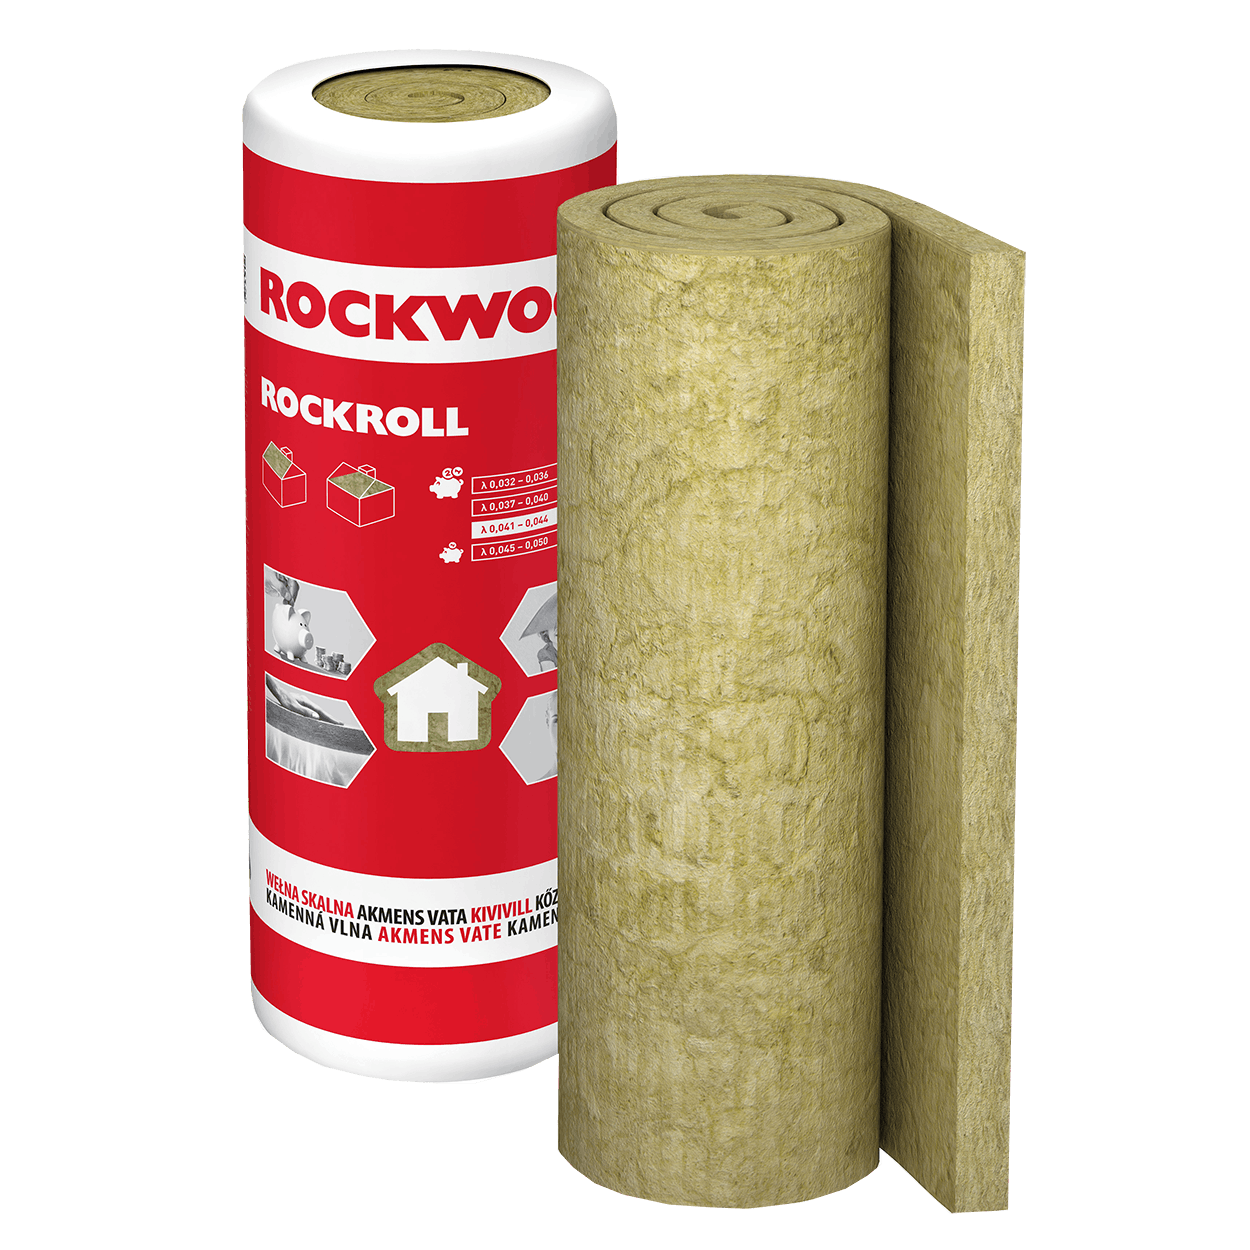 ROCKWOOL Rockroll akmens vate ruļļos